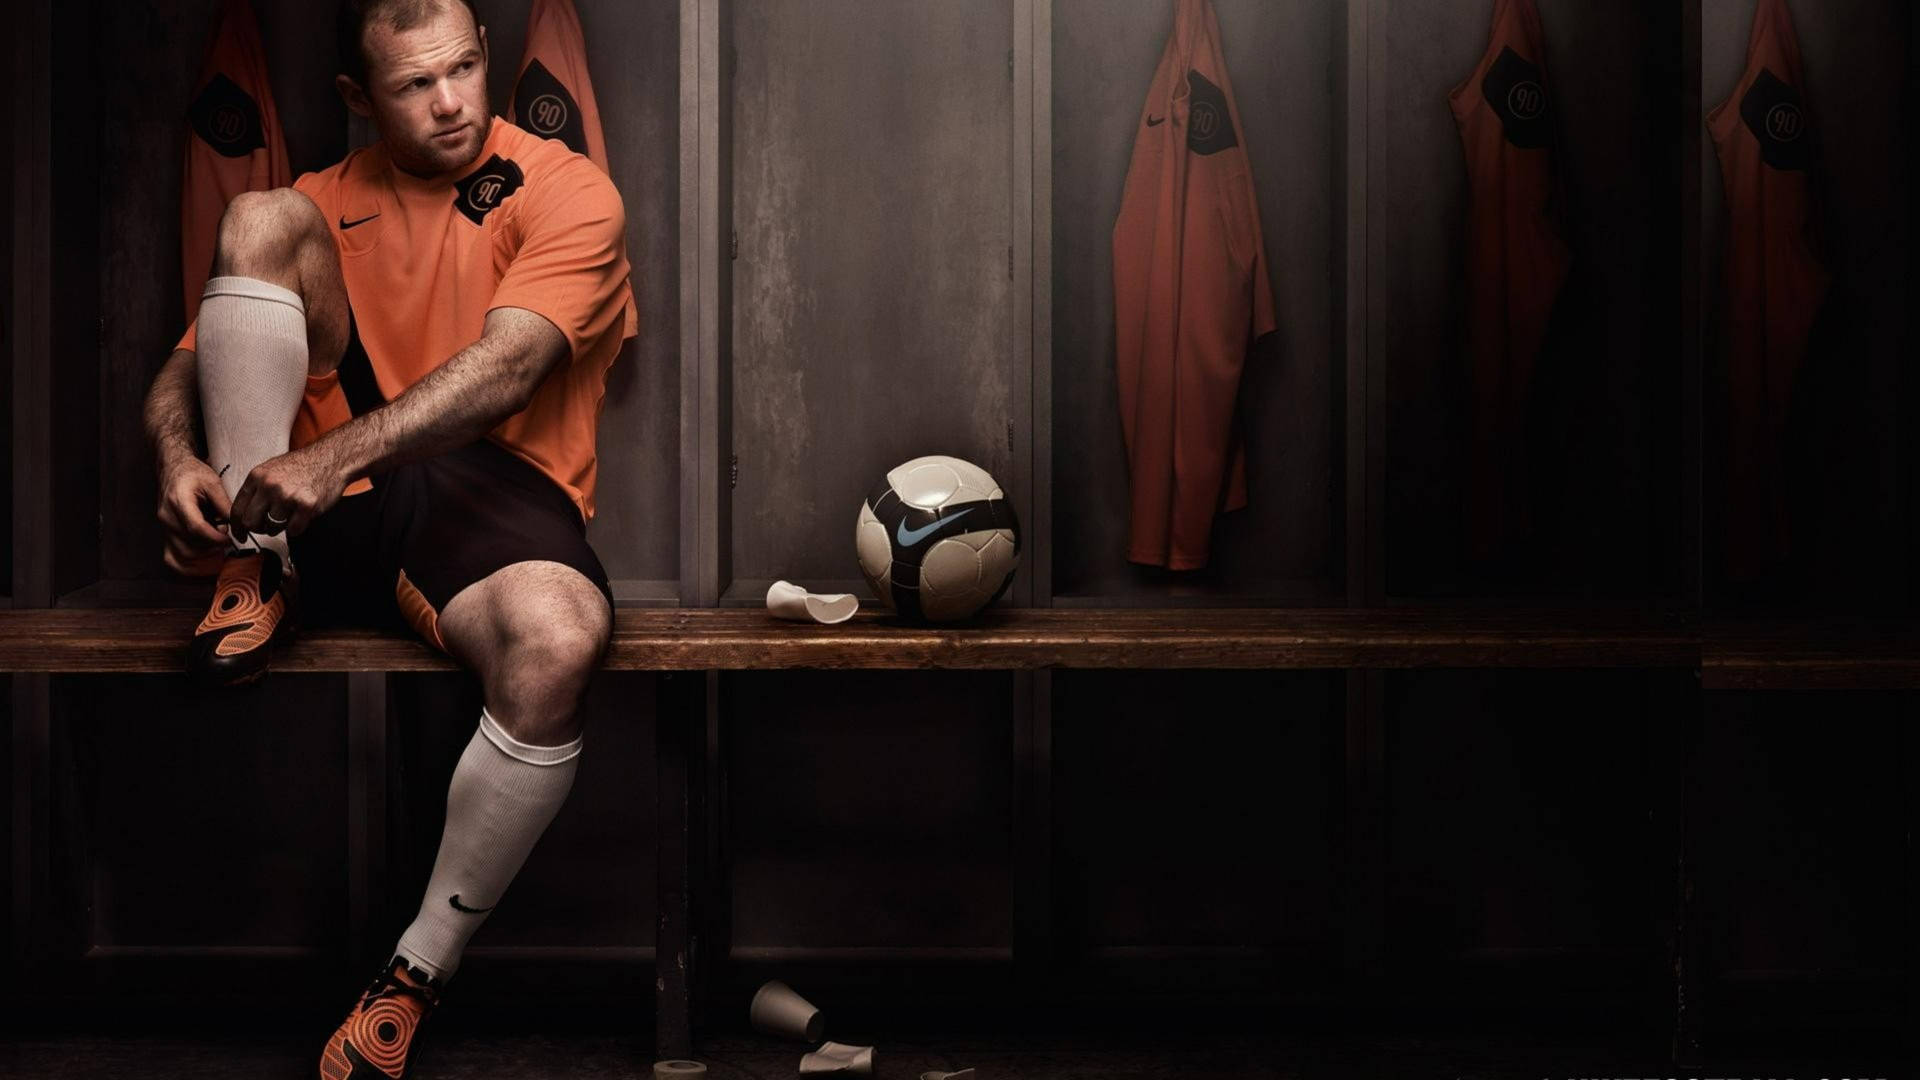 Wayne Rooney Nike Locker Room